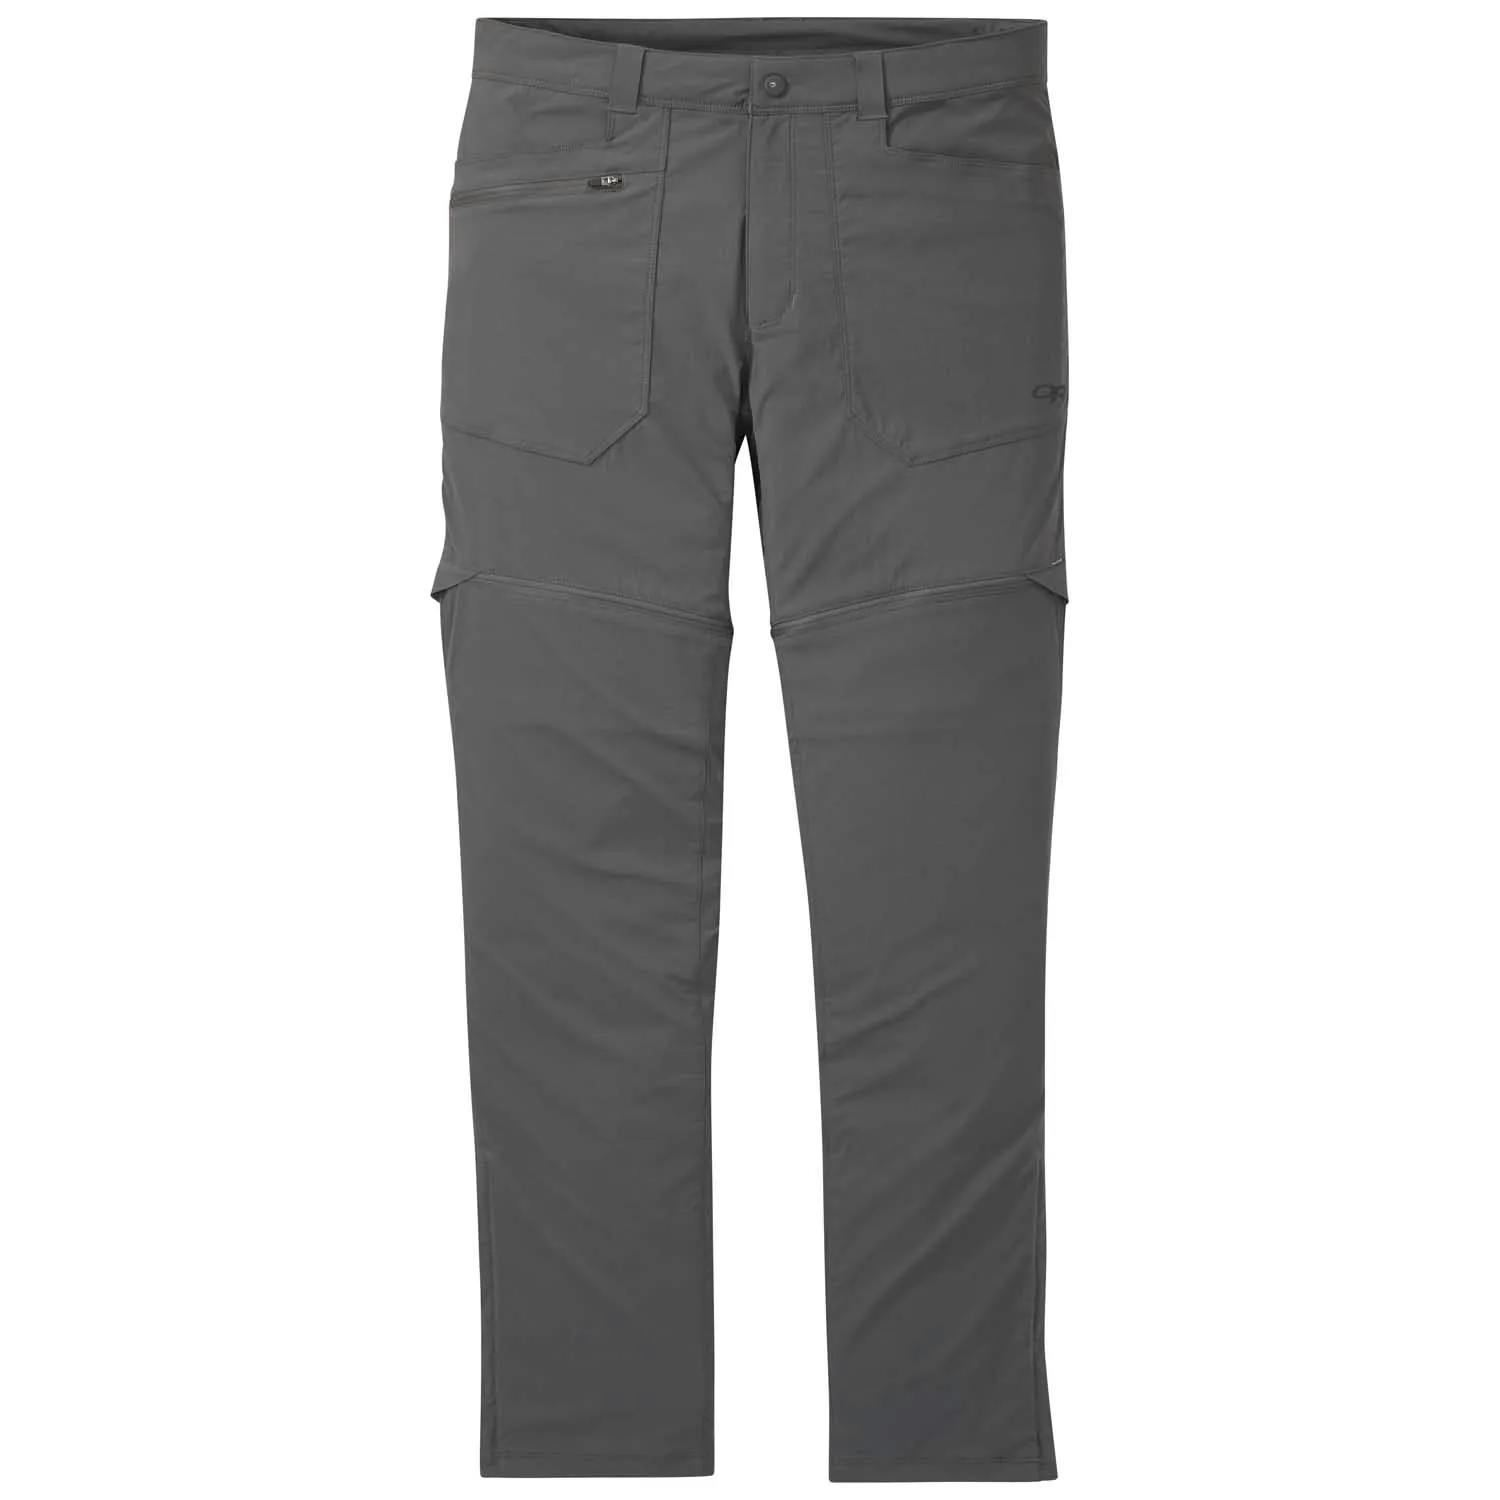 Outdoor Research Men's Equinox Convertible Pants